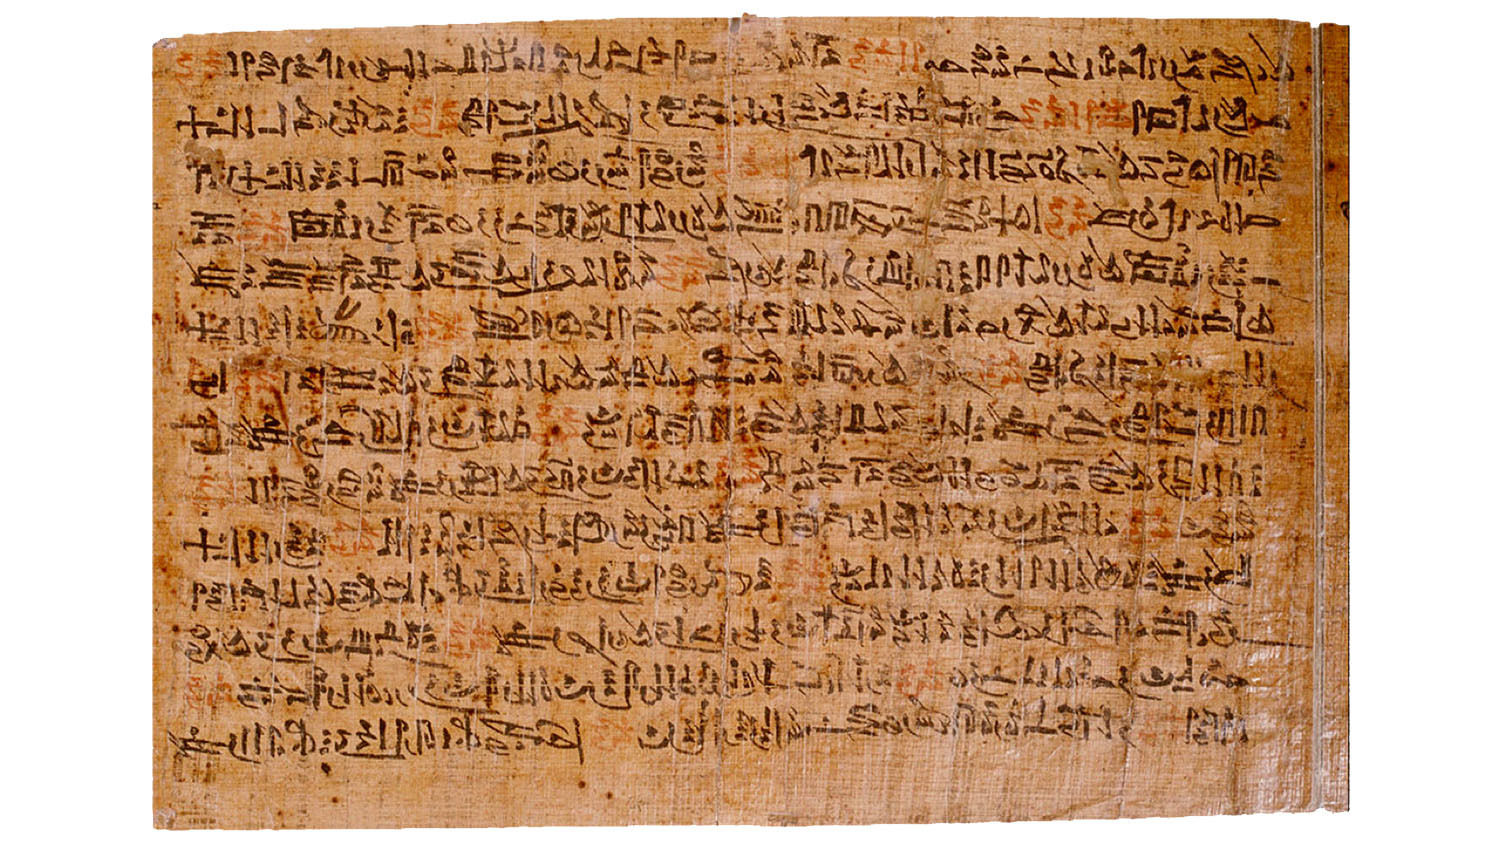 ipuwer papyrus english translation